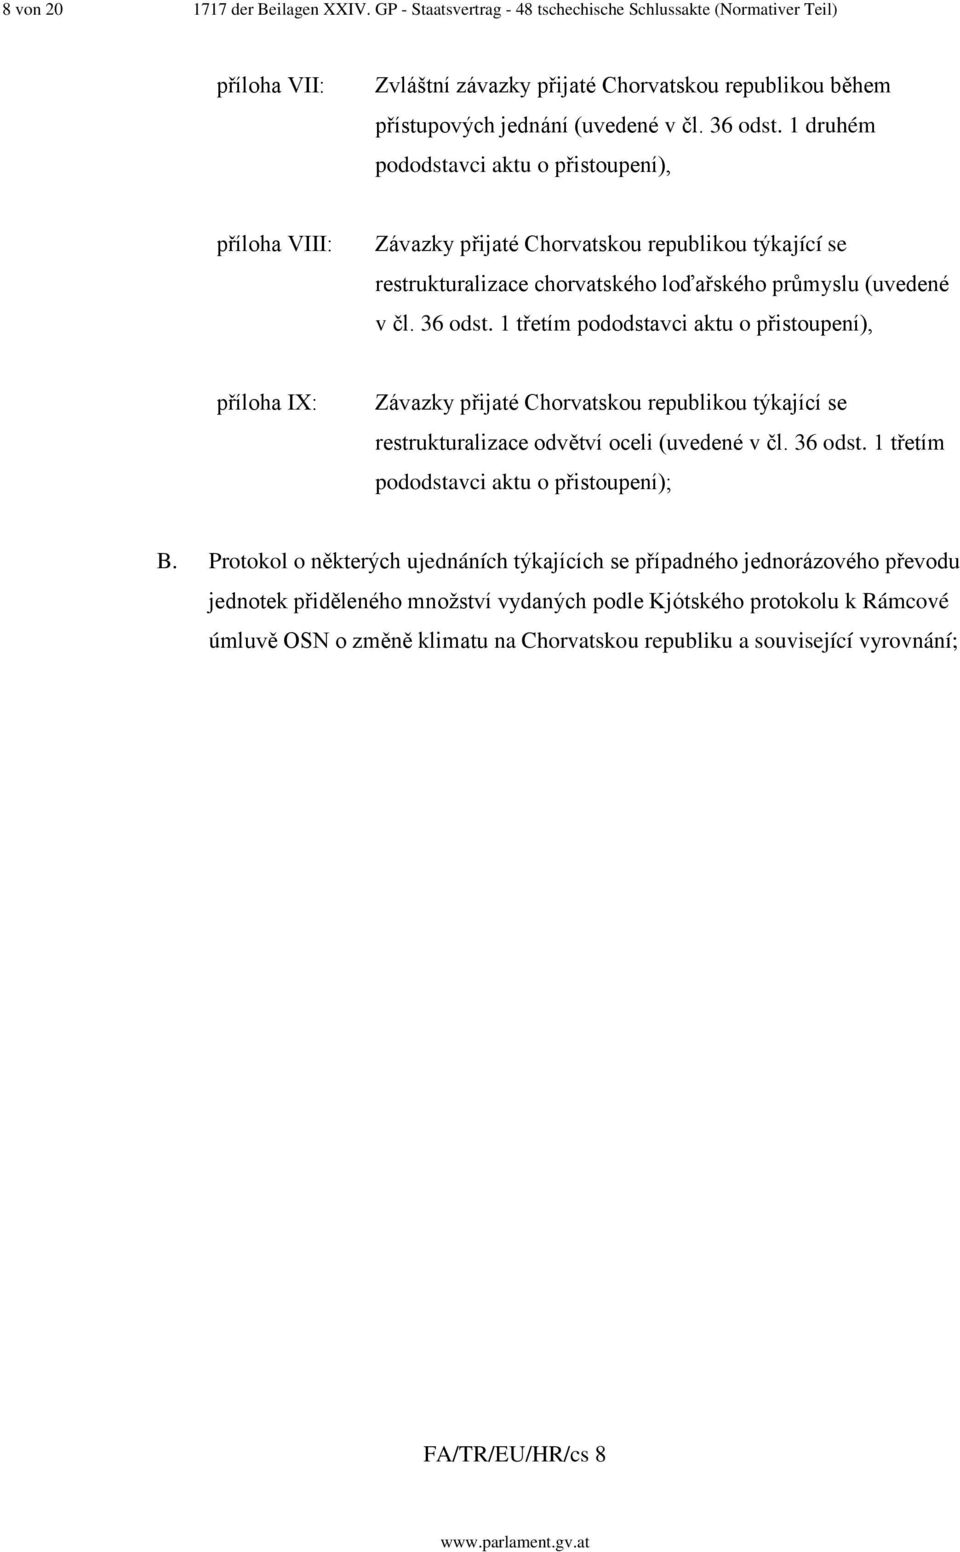 1 druhém pododstavci aktu o přistoupení), příloha VIII: Závazky přijaté Chorvatskou republikou týkající se restrukturalizace chorvatského loďařského průmyslu (uvedené v čl. 36 odst.